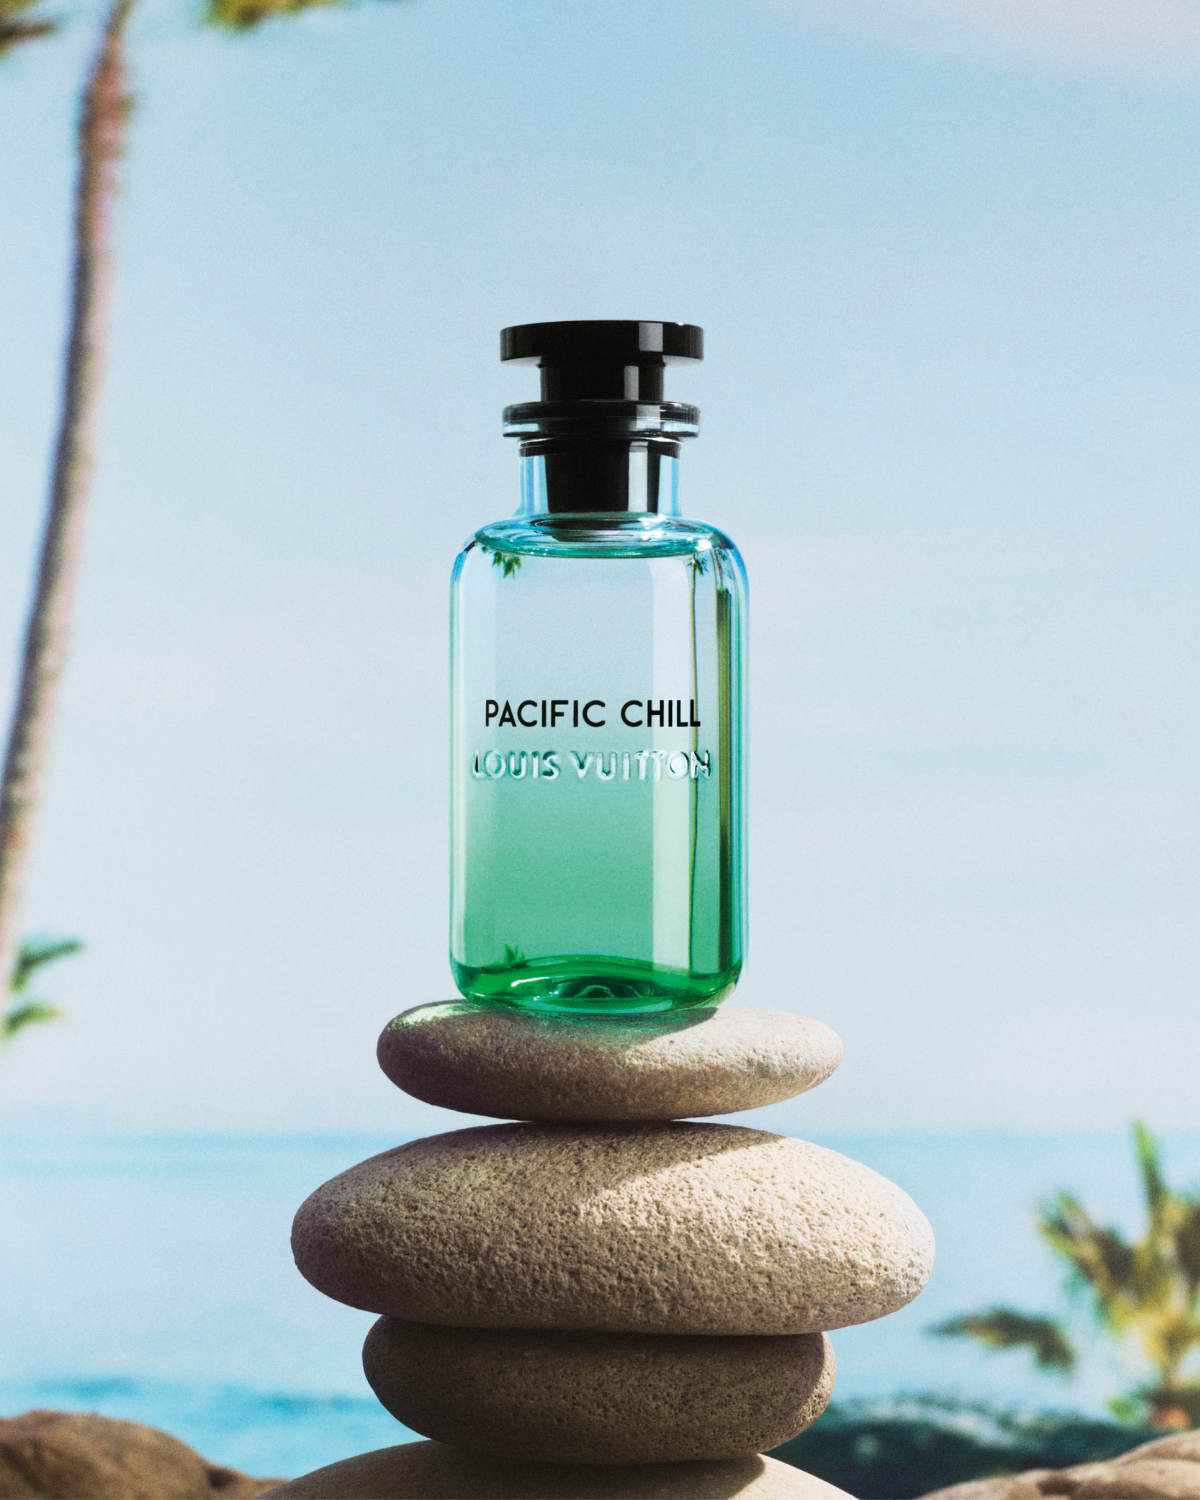 Louis Vuitton Presents Its New Pacific Chill Parfum De Cologne